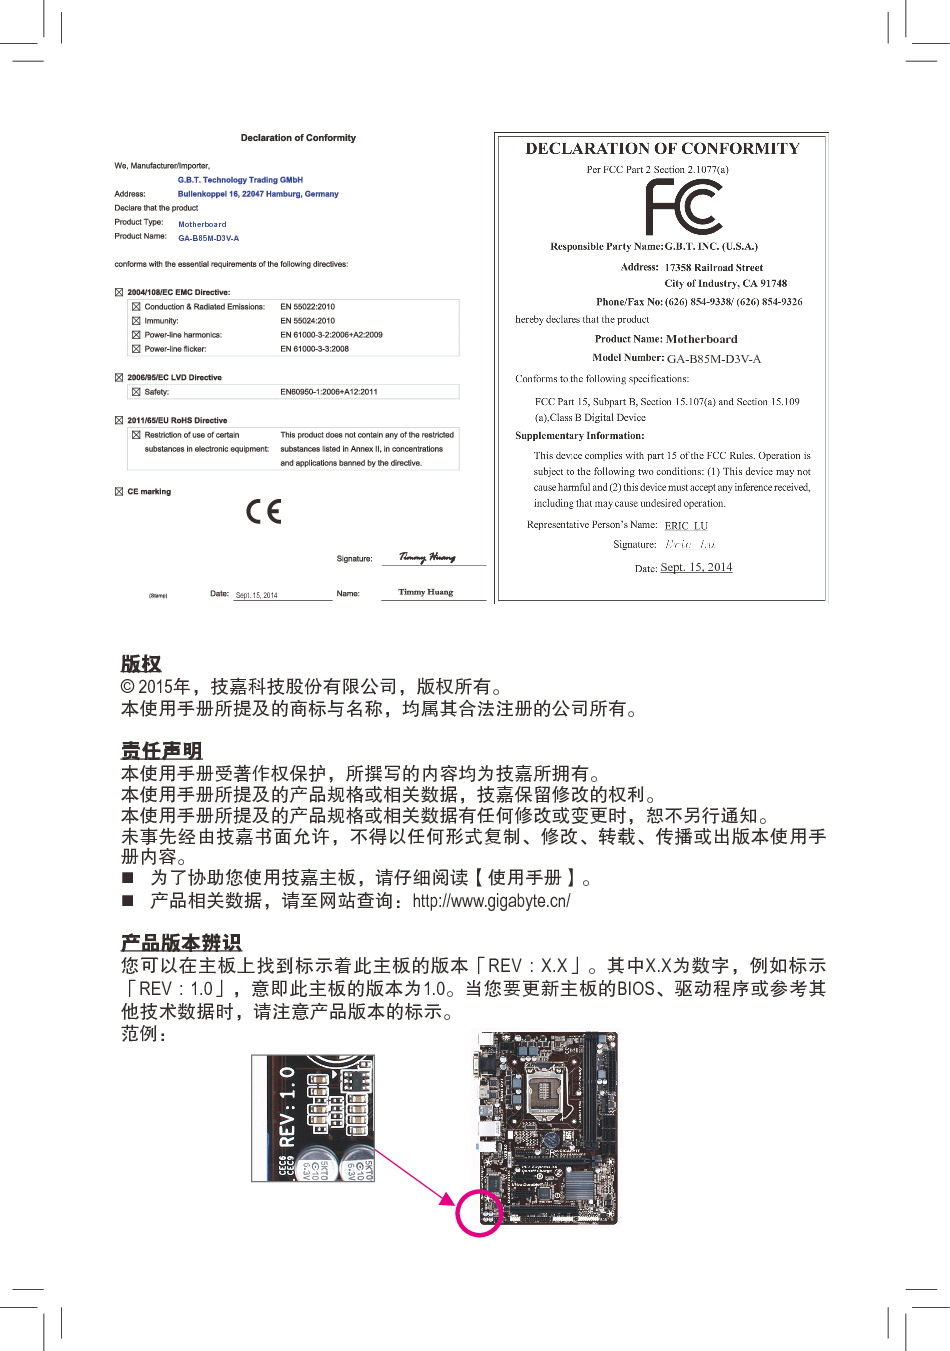 技嘉 Gigabyte GA-B85M-D3V-A 使用手册 第1页